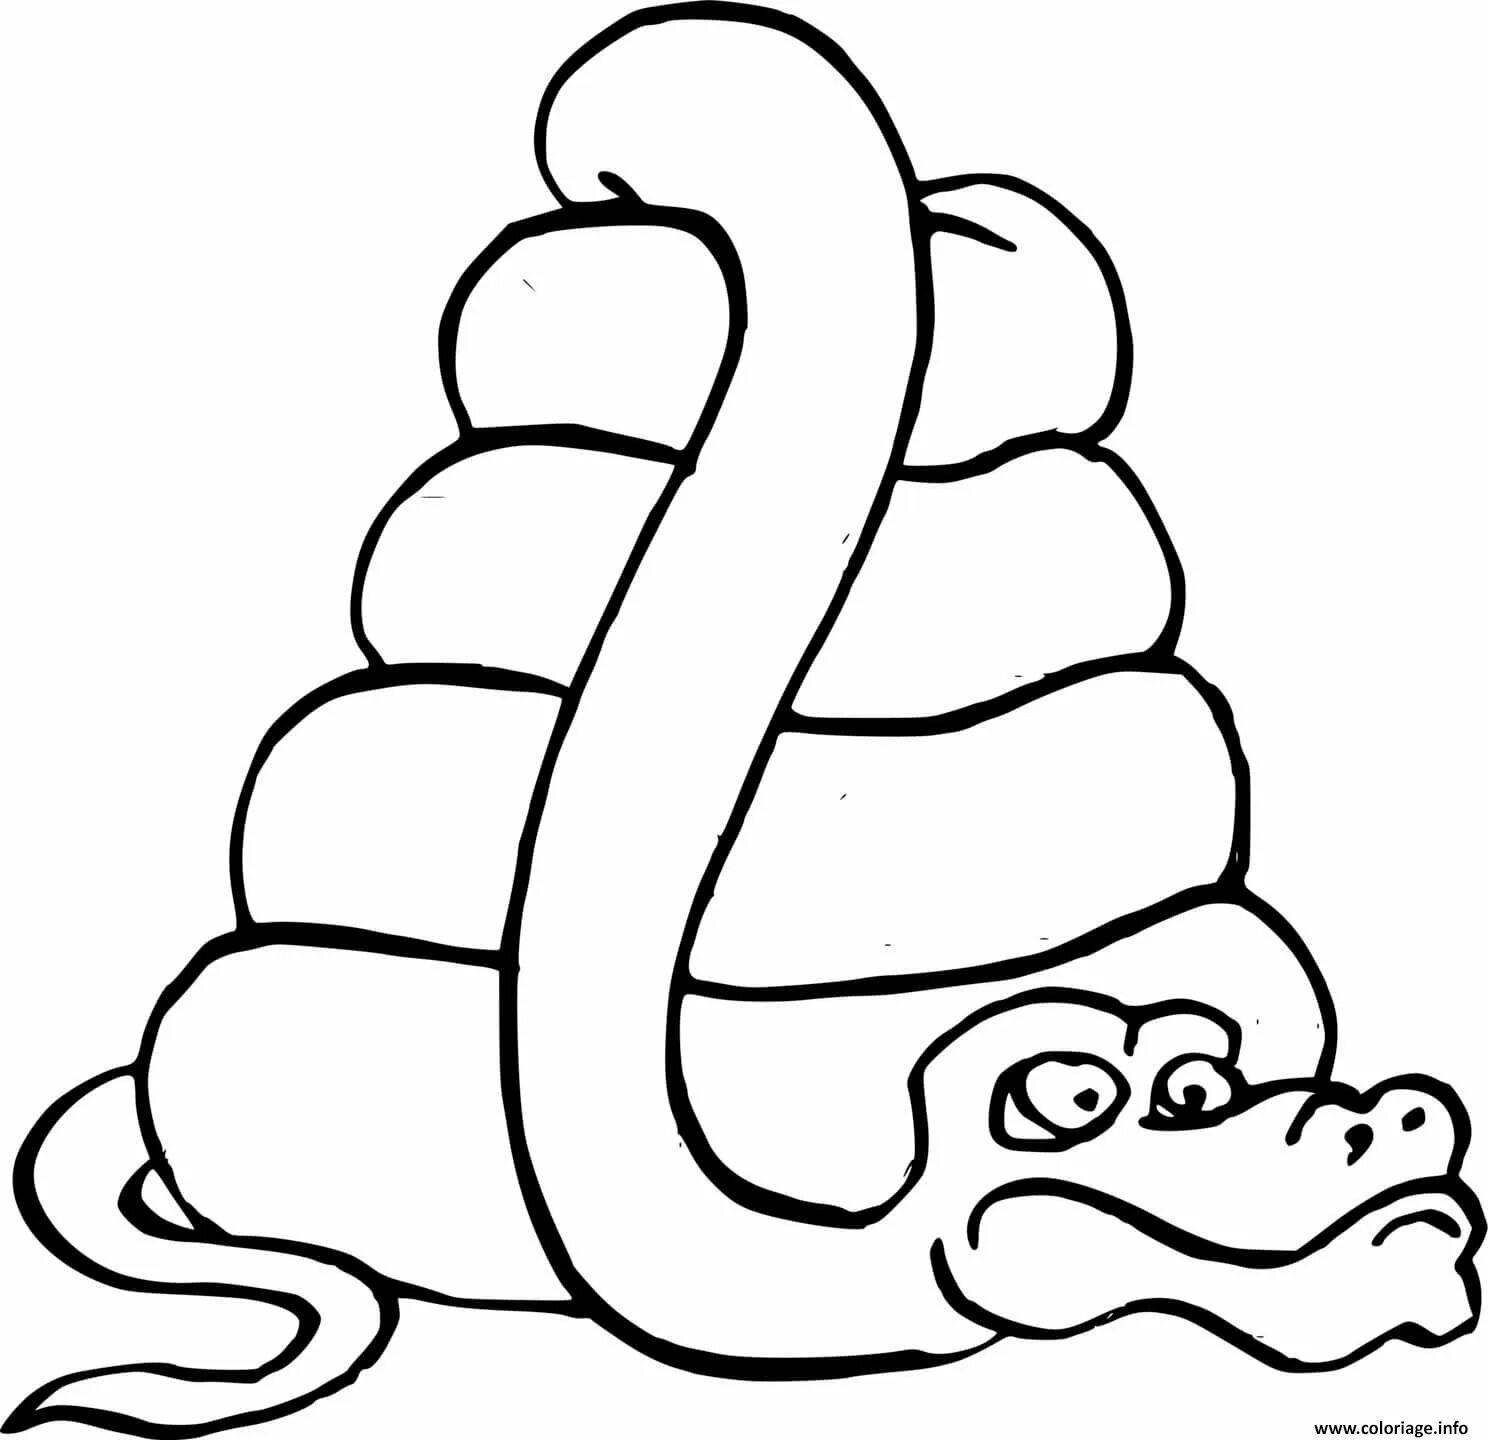 Змея раскраска. Змея раскраска для детей. Раскраска змеи для детей. Рисунок змеи карандашом для детей.